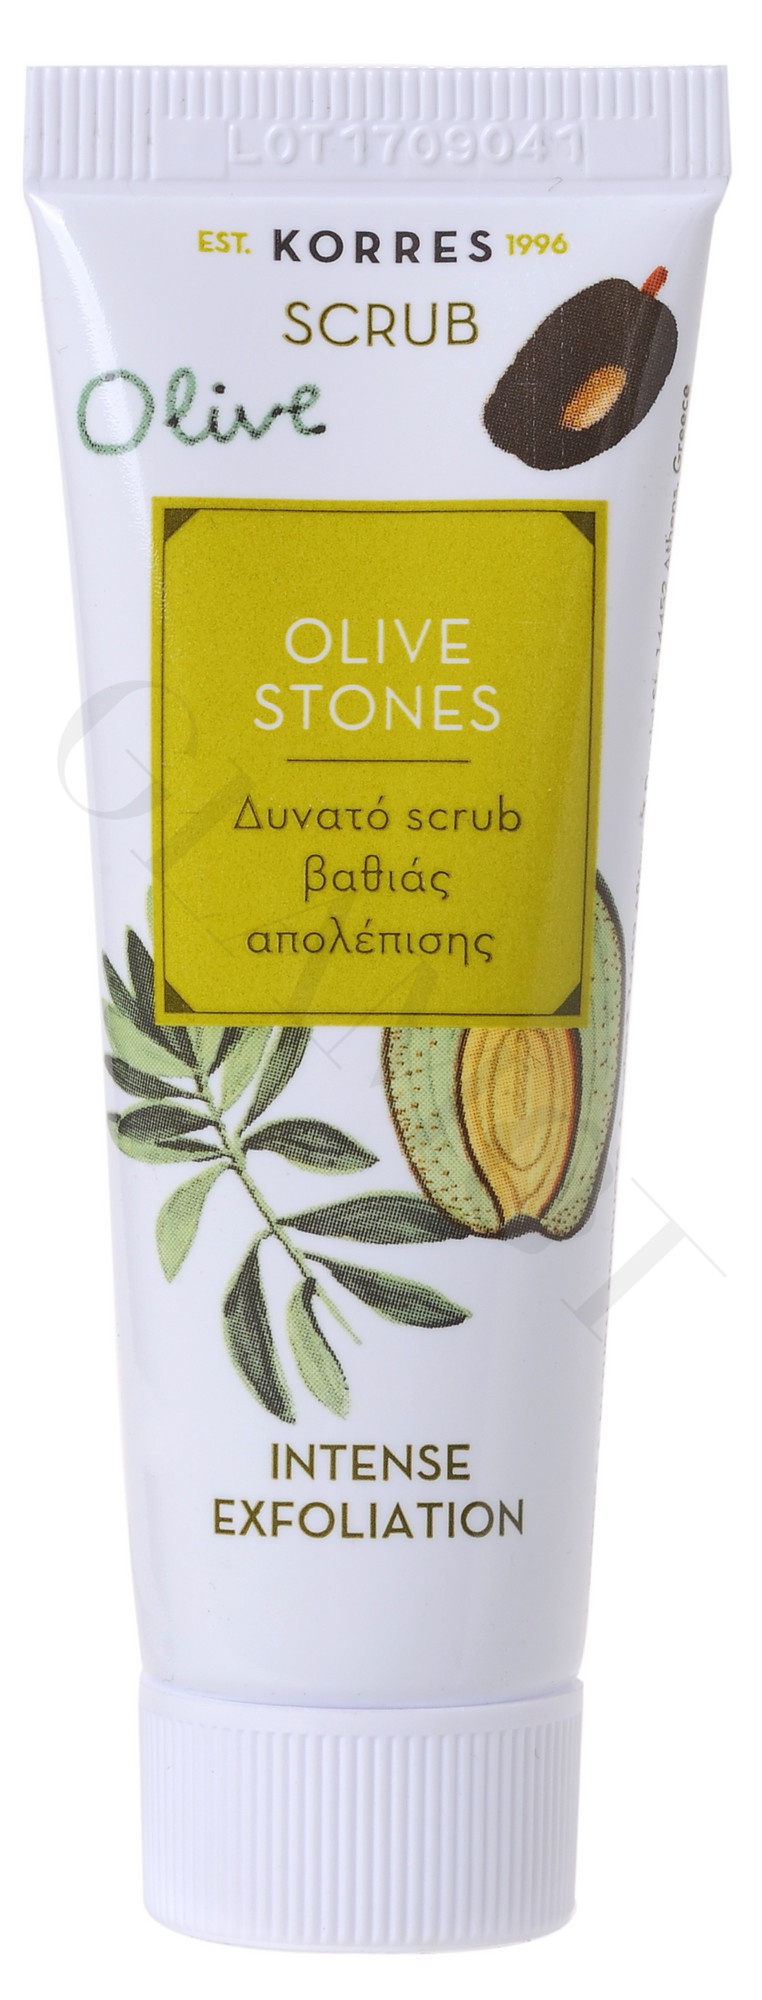 Korres Olive Stones Scrub